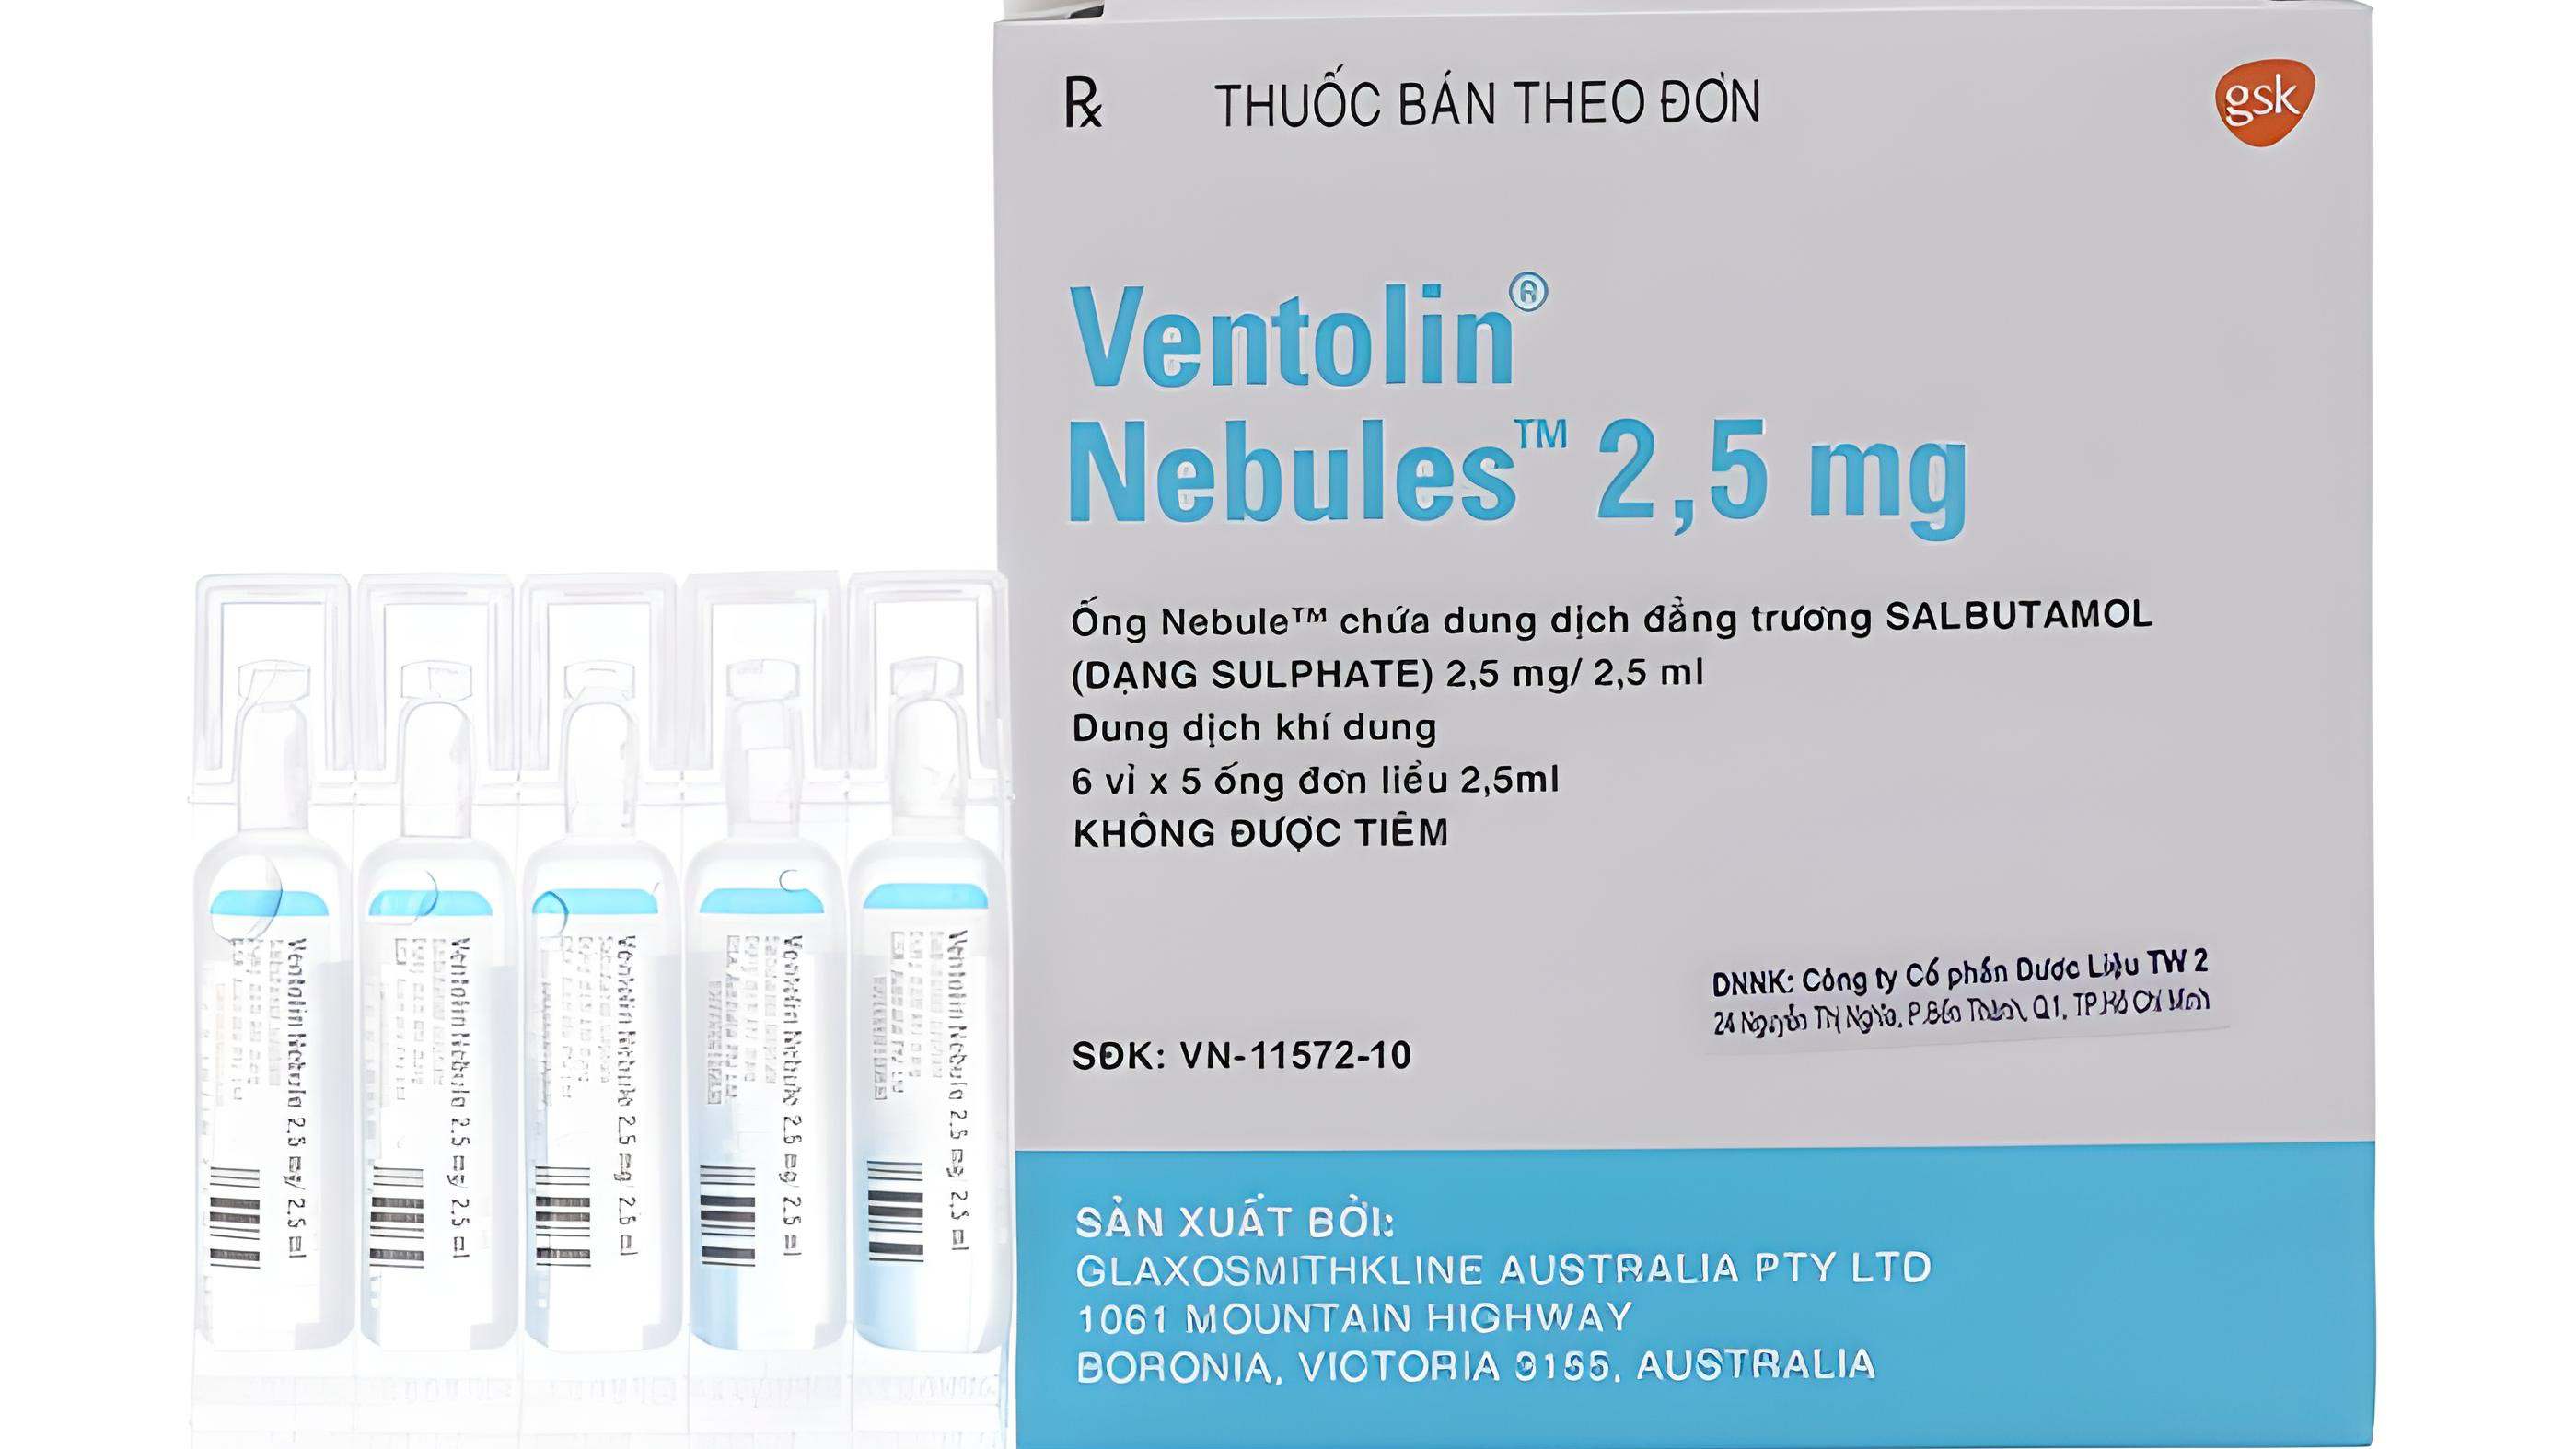 Thuốc Ventolin có thể dùng để điều trị hoặc ngăn ngừa điều gì?
